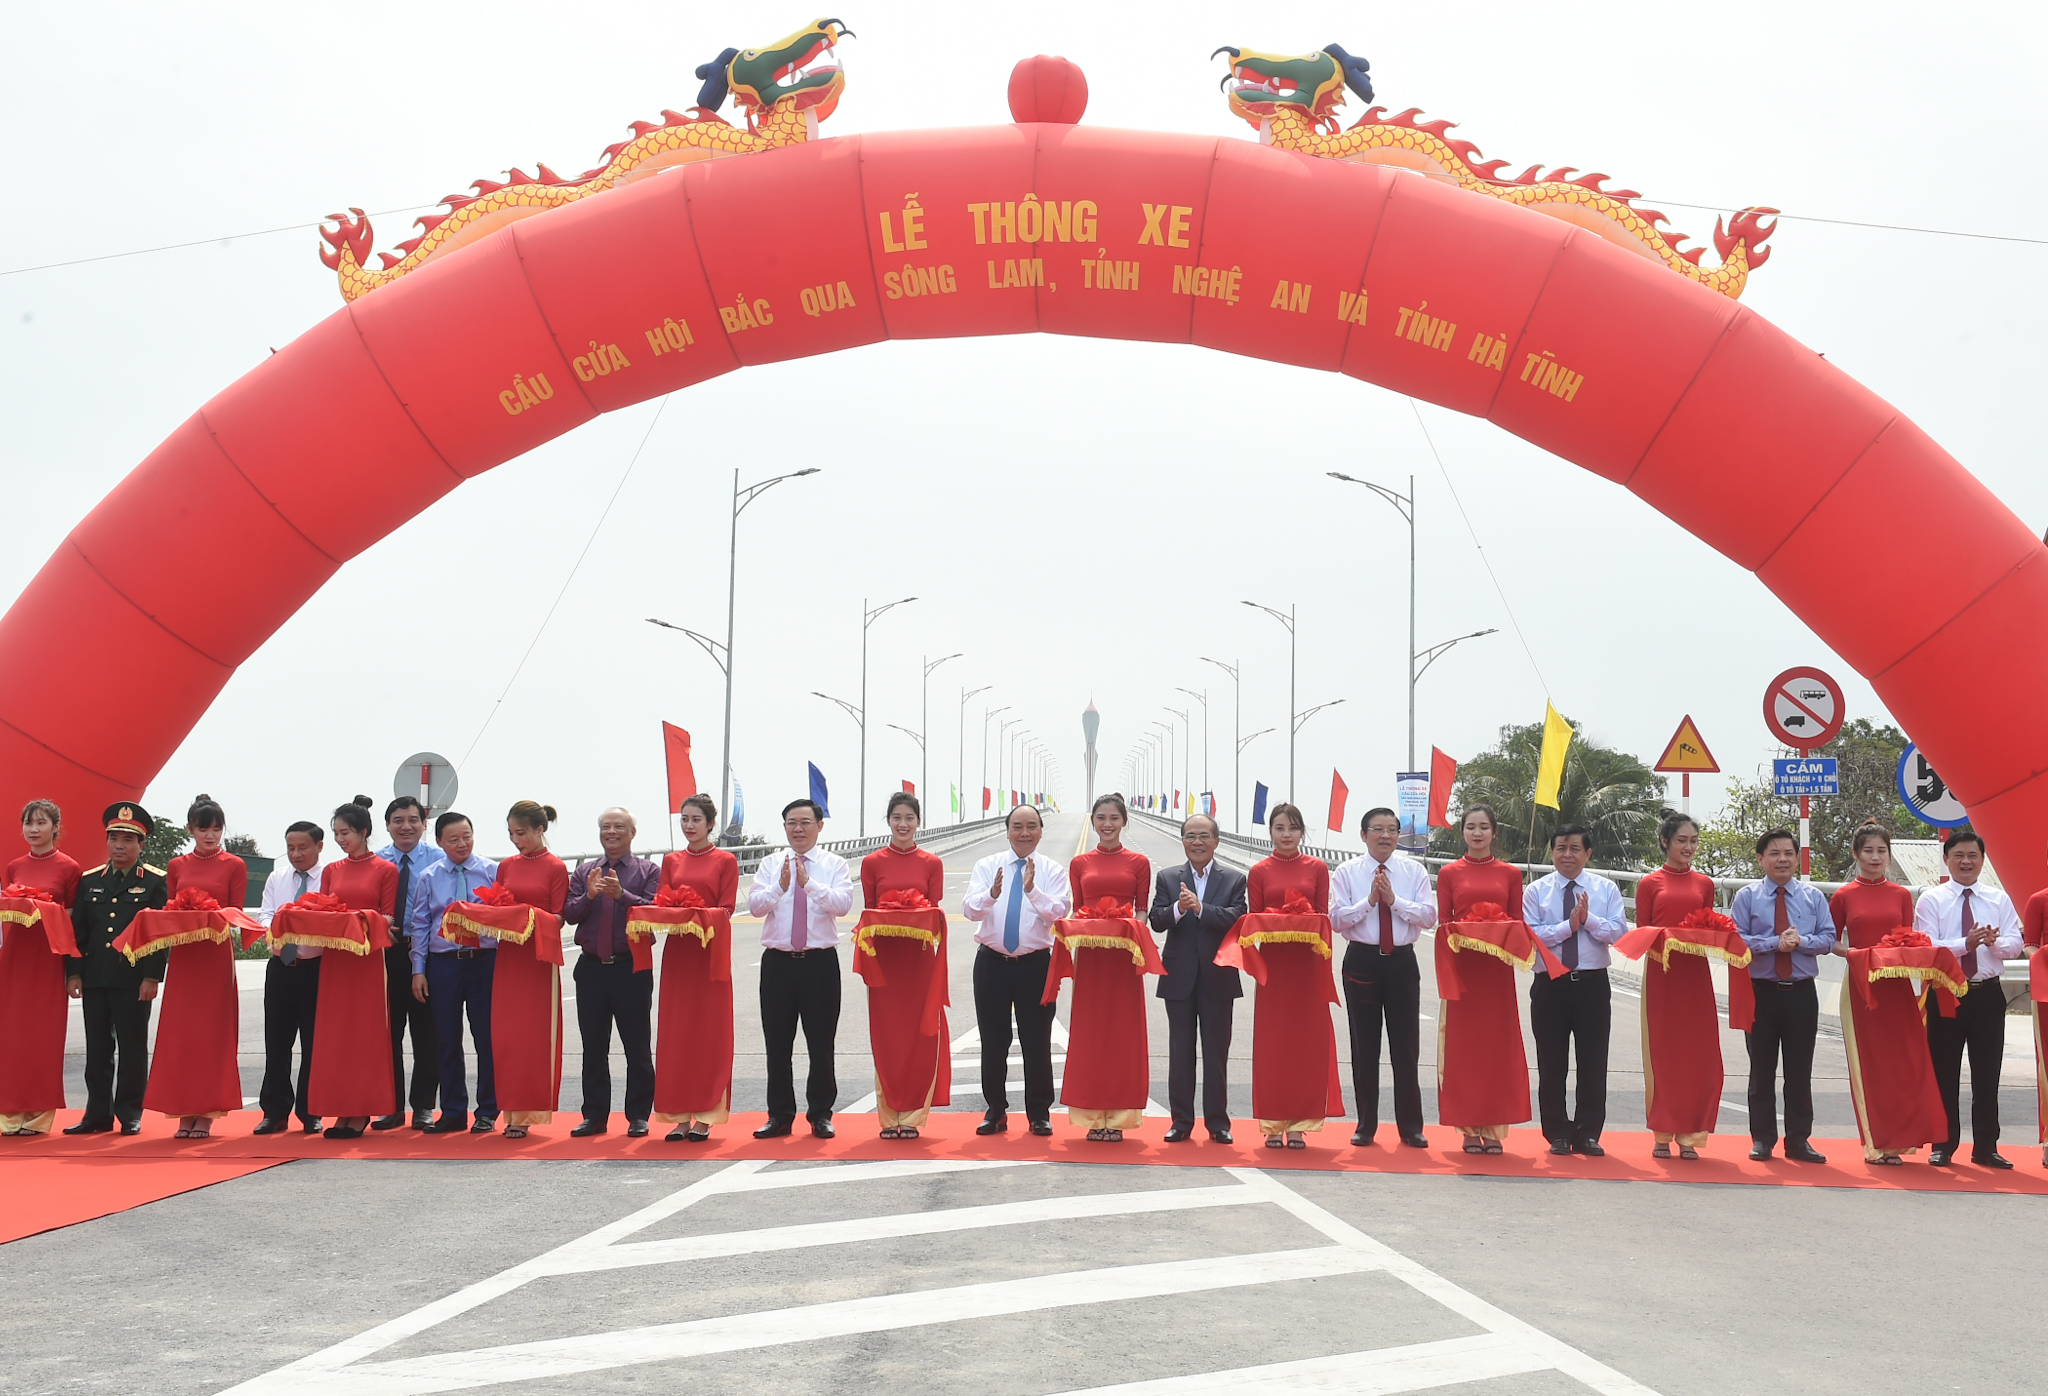 Thủ tướng Nguyễn Xuân Phúc cùng các đại biểu cắt băng thông xe cầu Cửa Hội, nối đôi bờ sông Lam. Ảnh VGP/Quang Hiếu